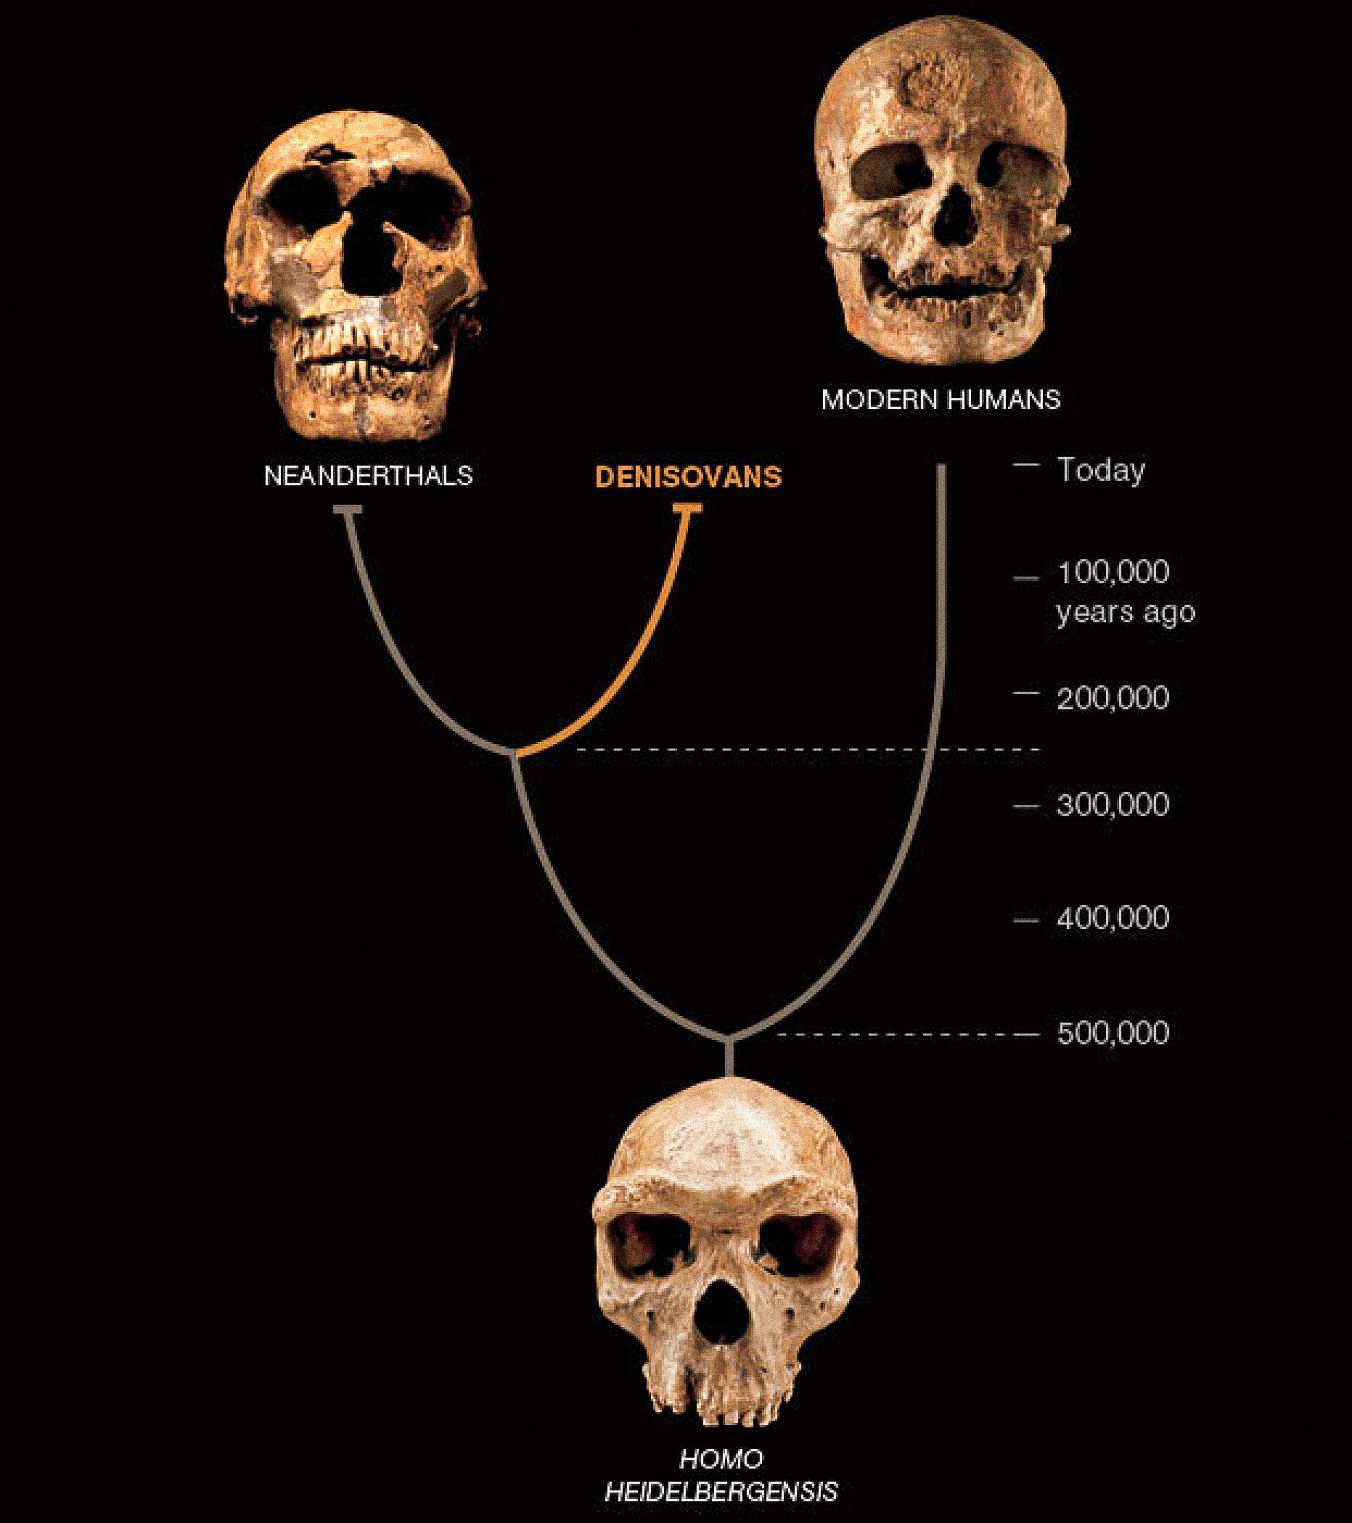 Šķiet, ka trešais cilvēku veids, ko sauc par Denisovans, Āzijā pastāvēja līdzās neandertāliešiem un agrīnajiem mūsdienu cilvēkiem. Pēdējie divi ir zināmi no bagātīgām fosilijām un artefaktiem. Denisovanus līdz šim nosaka tikai DNS no viena kaula mikroshēmas un diviem zobiem, taču tas atklāj jaunu cilvēka stāsta pavērsienu.